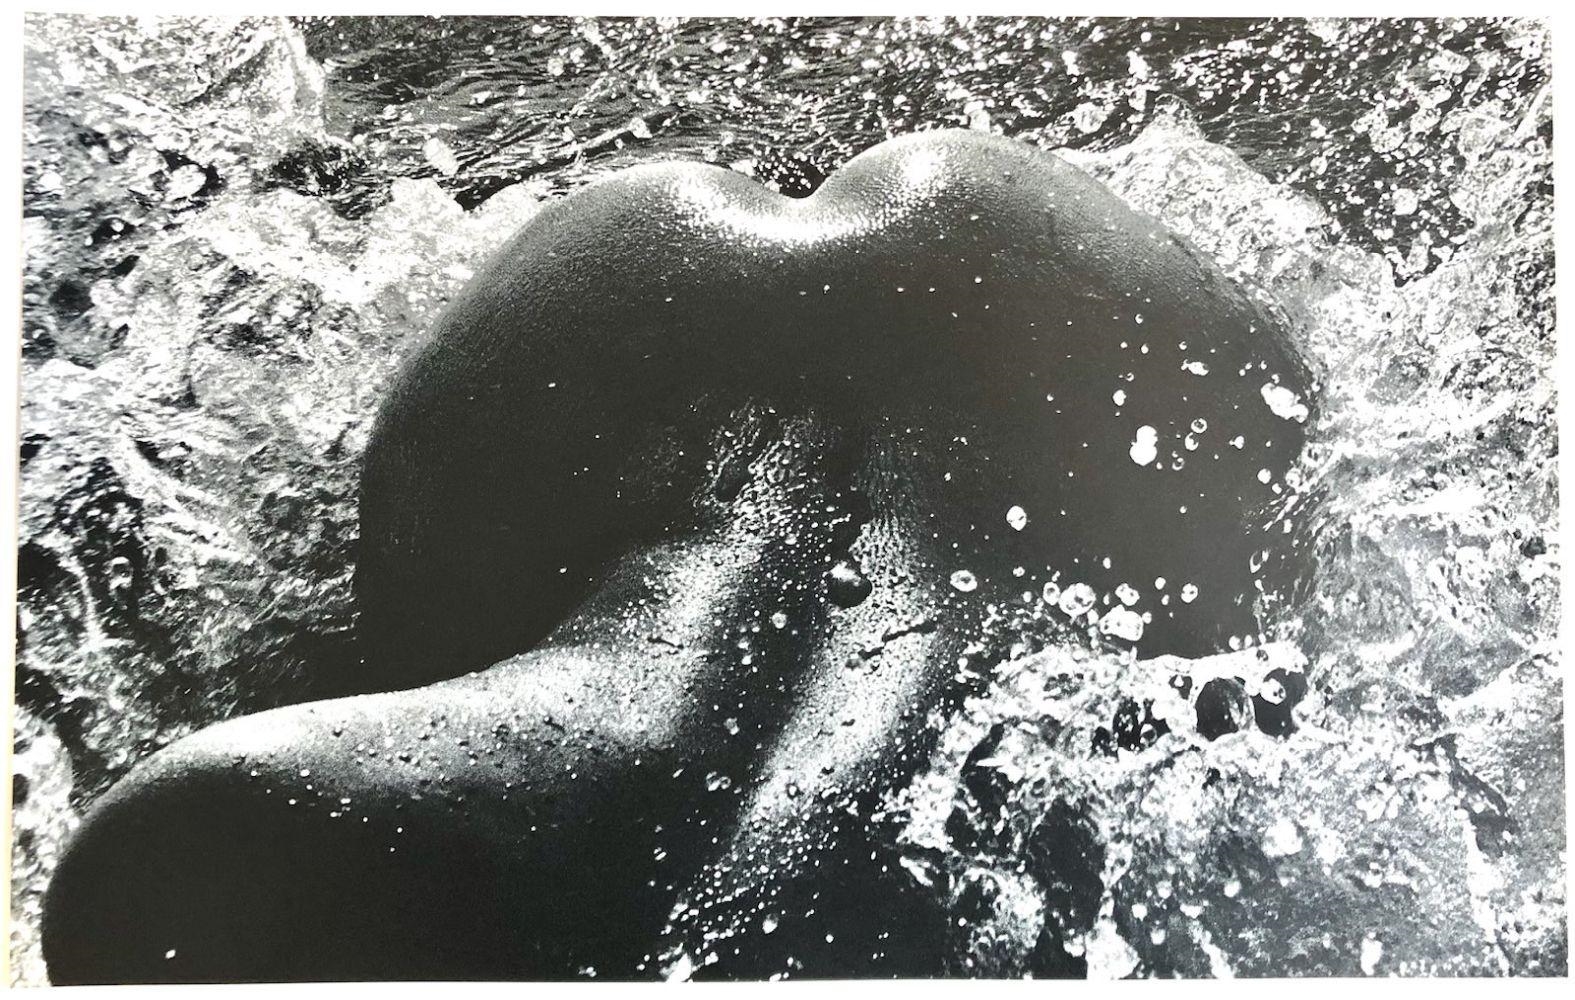 Née de la Vague (Born of the Waves) by Lucien Clergue, 1968